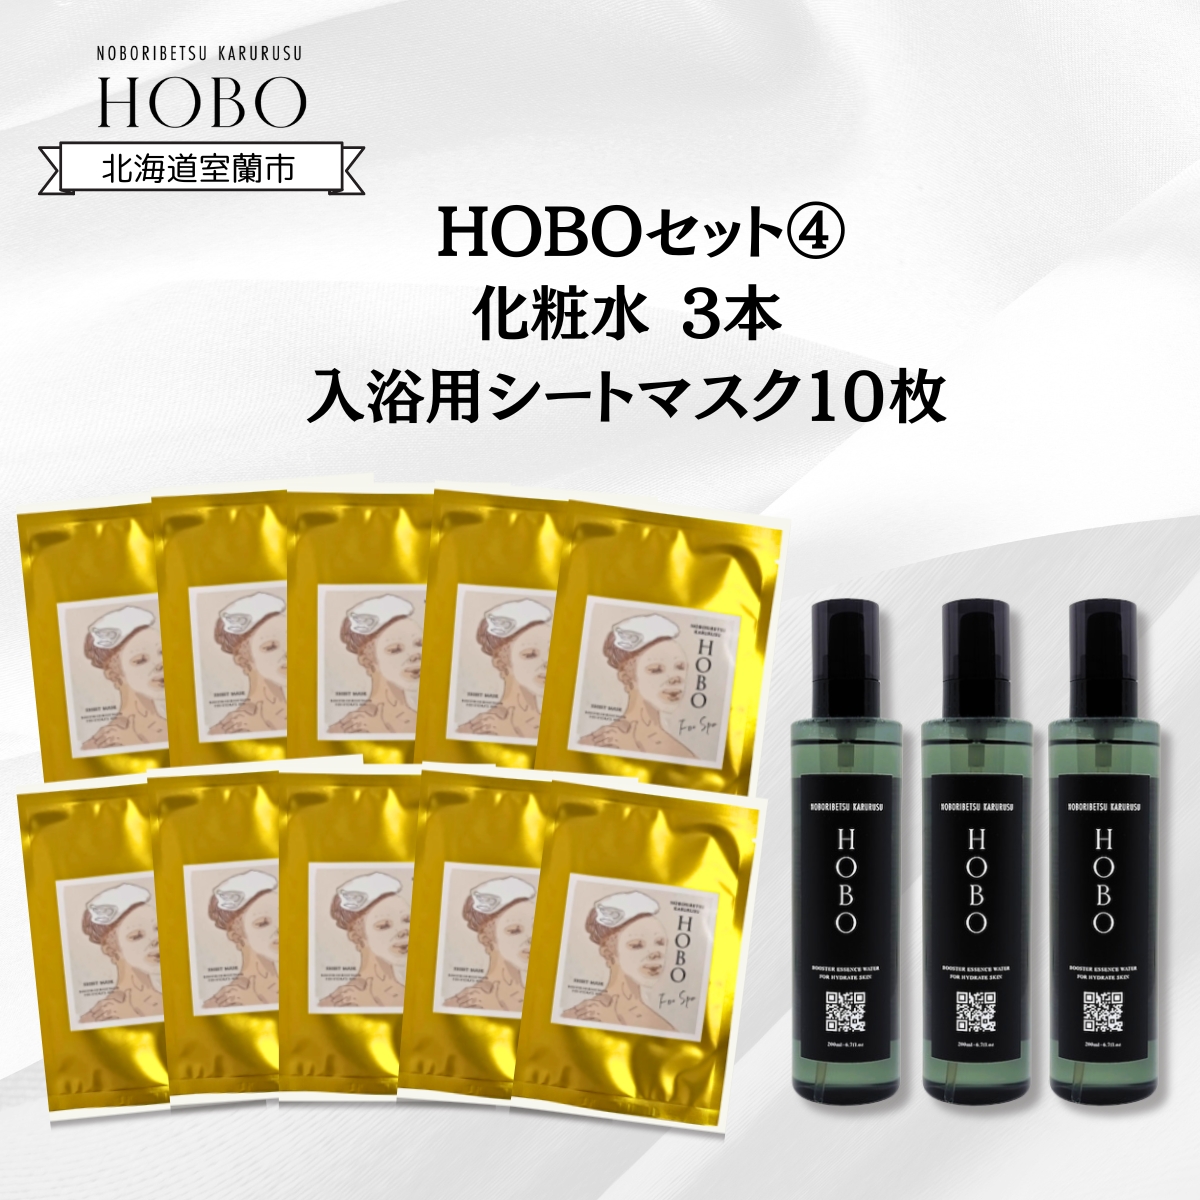 HOBOセット(4)【 化粧水 3本 + 入浴用 シート マスク 10枚 】 MROJ009